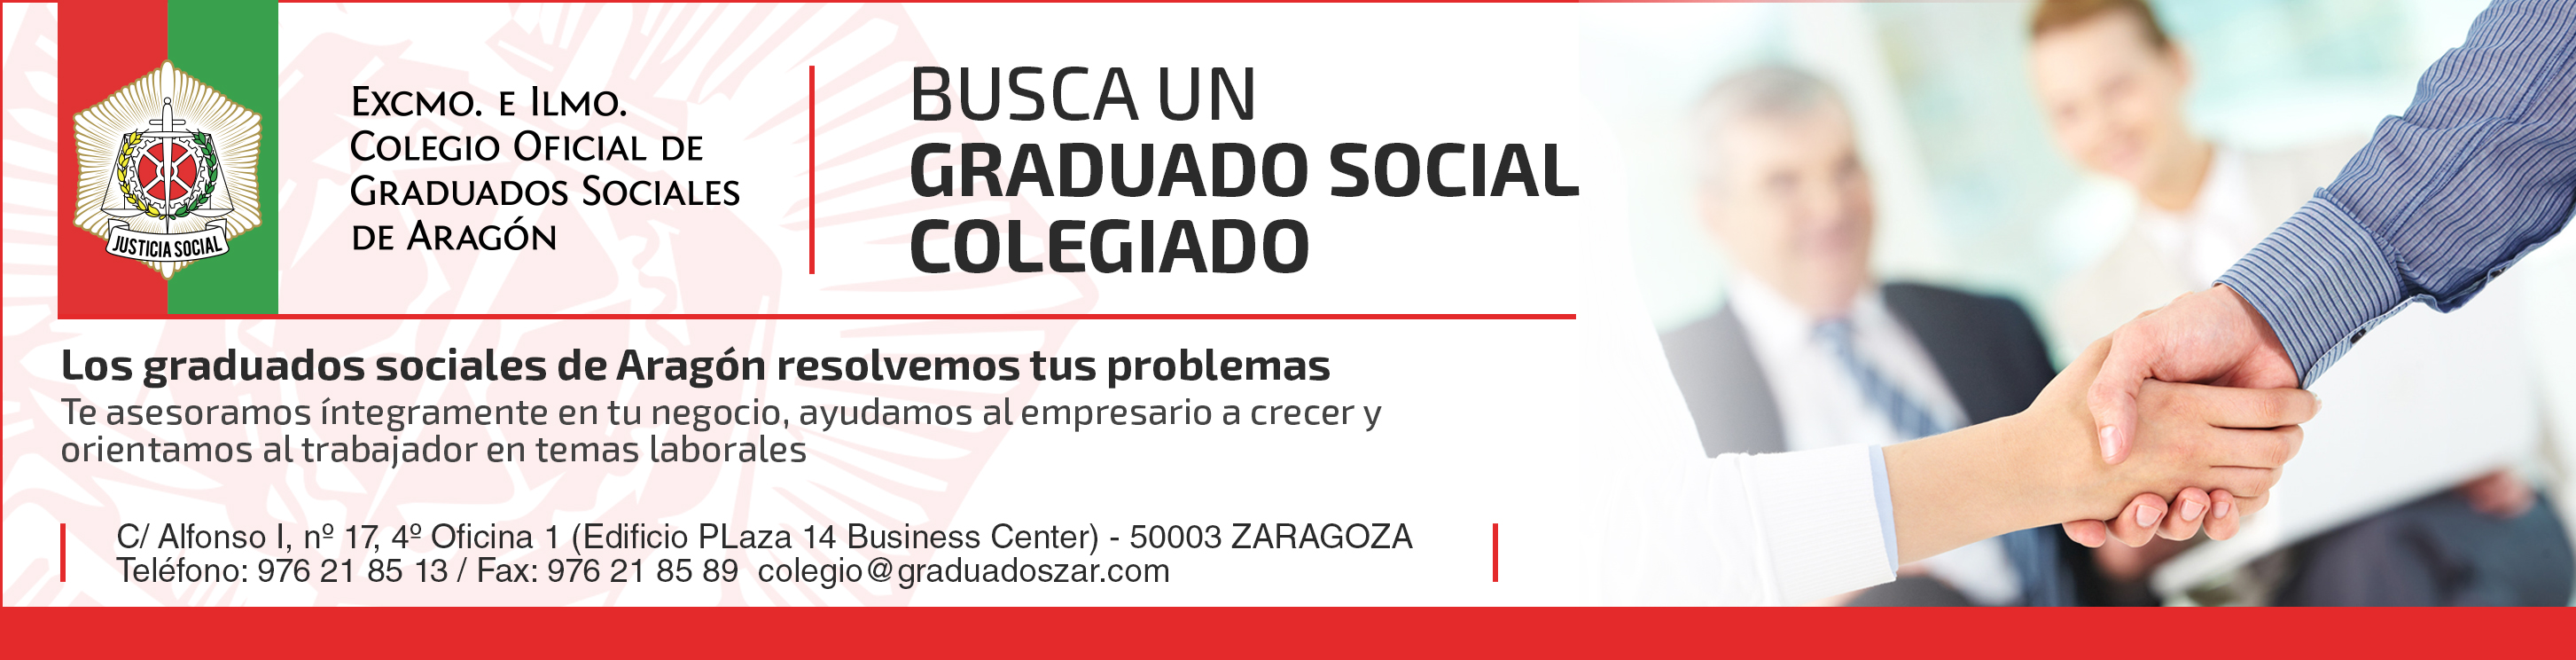 Publicidad prensa - Colegio Graduados Sociales Aragón